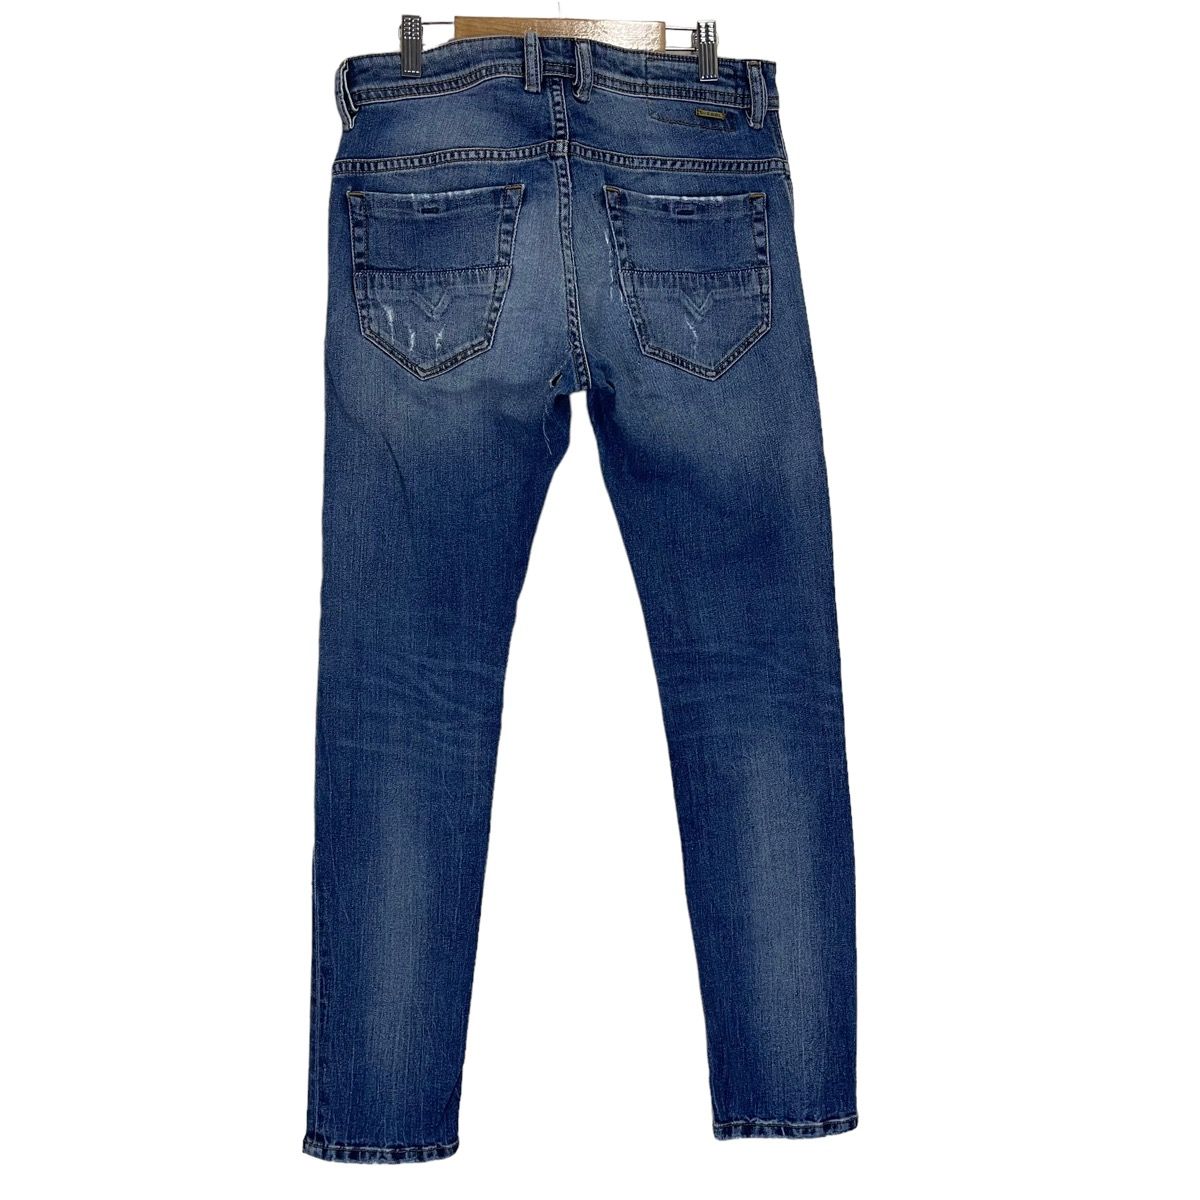 Diesel Industry Thommer Slim Skinny Distressed Jeans - 5